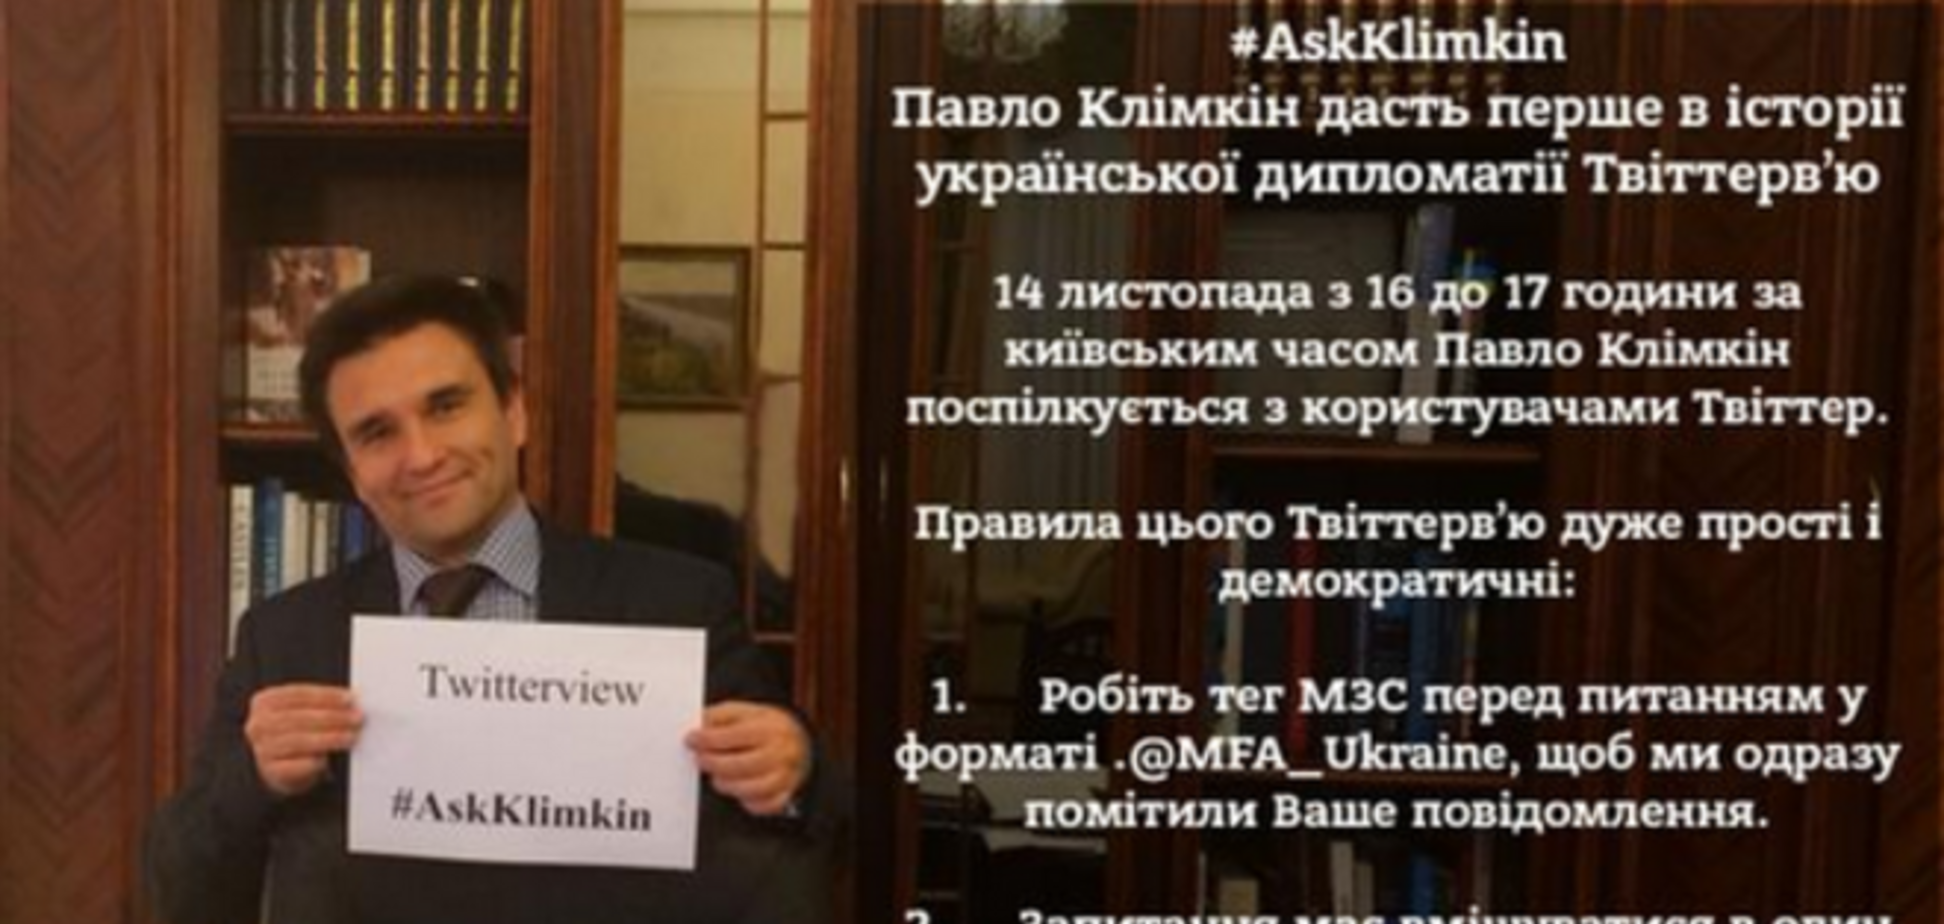 Клімкін проведе перше в історії української дипломатії 'твіттерв'ю'